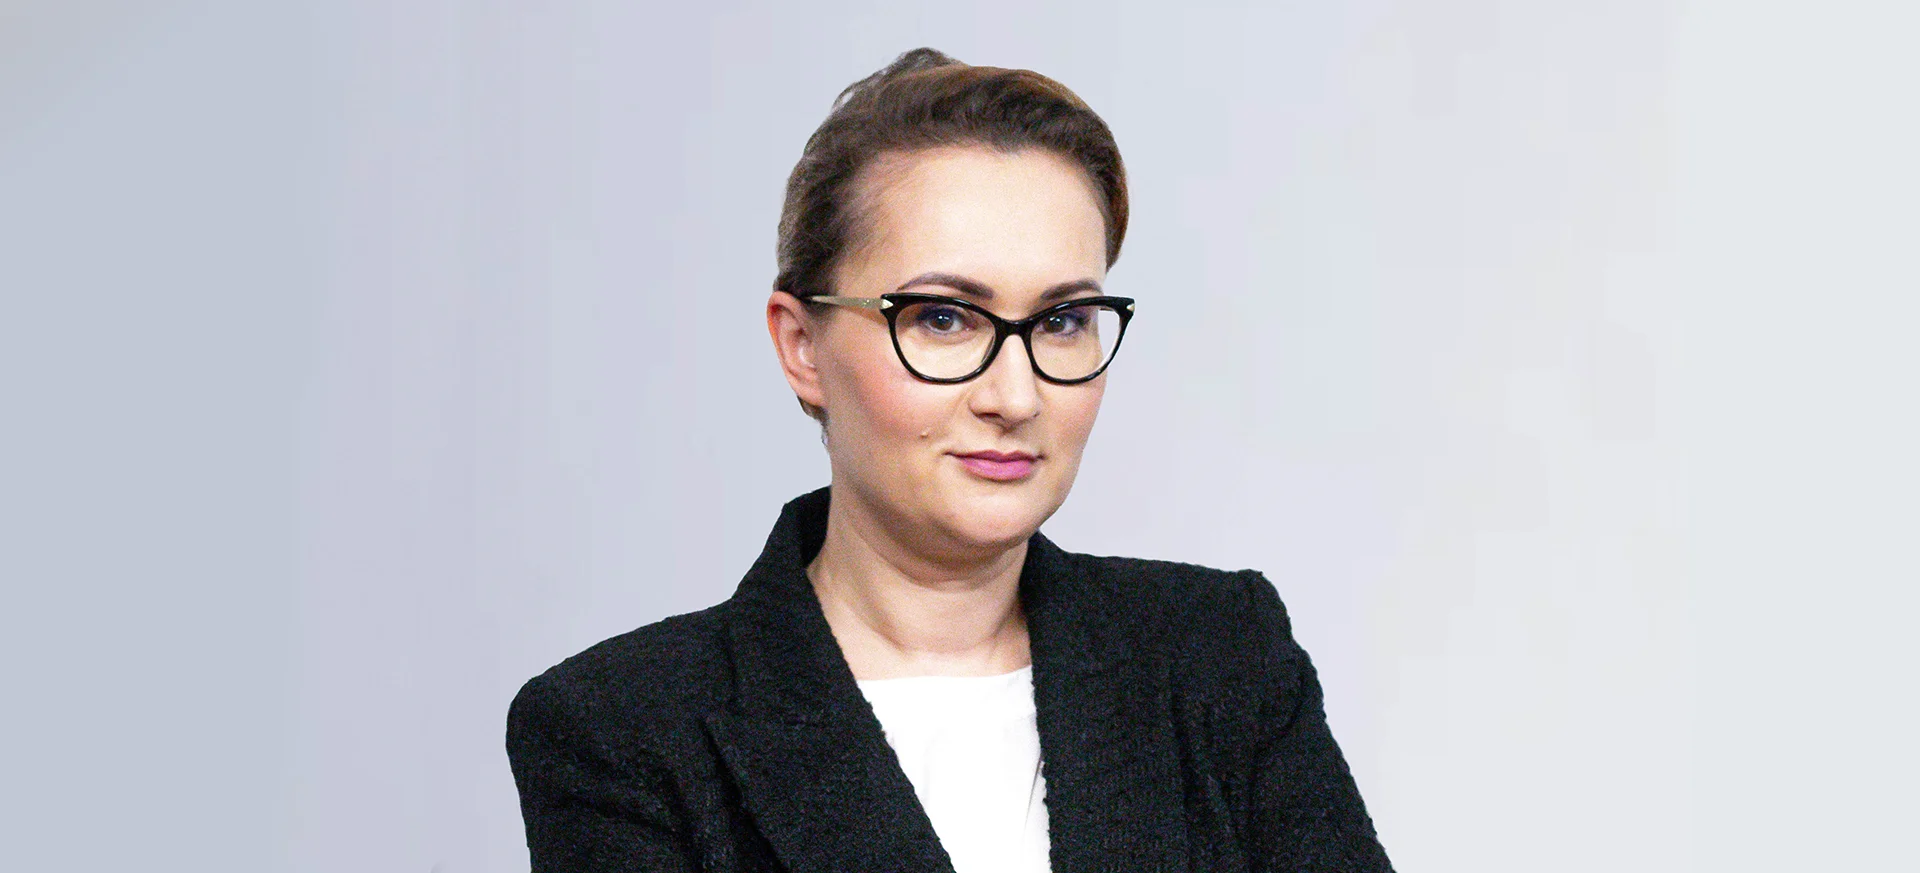 Radca prawny of counsel, doktor nauk prawnych Kamila Piernik-Wierzbowska 